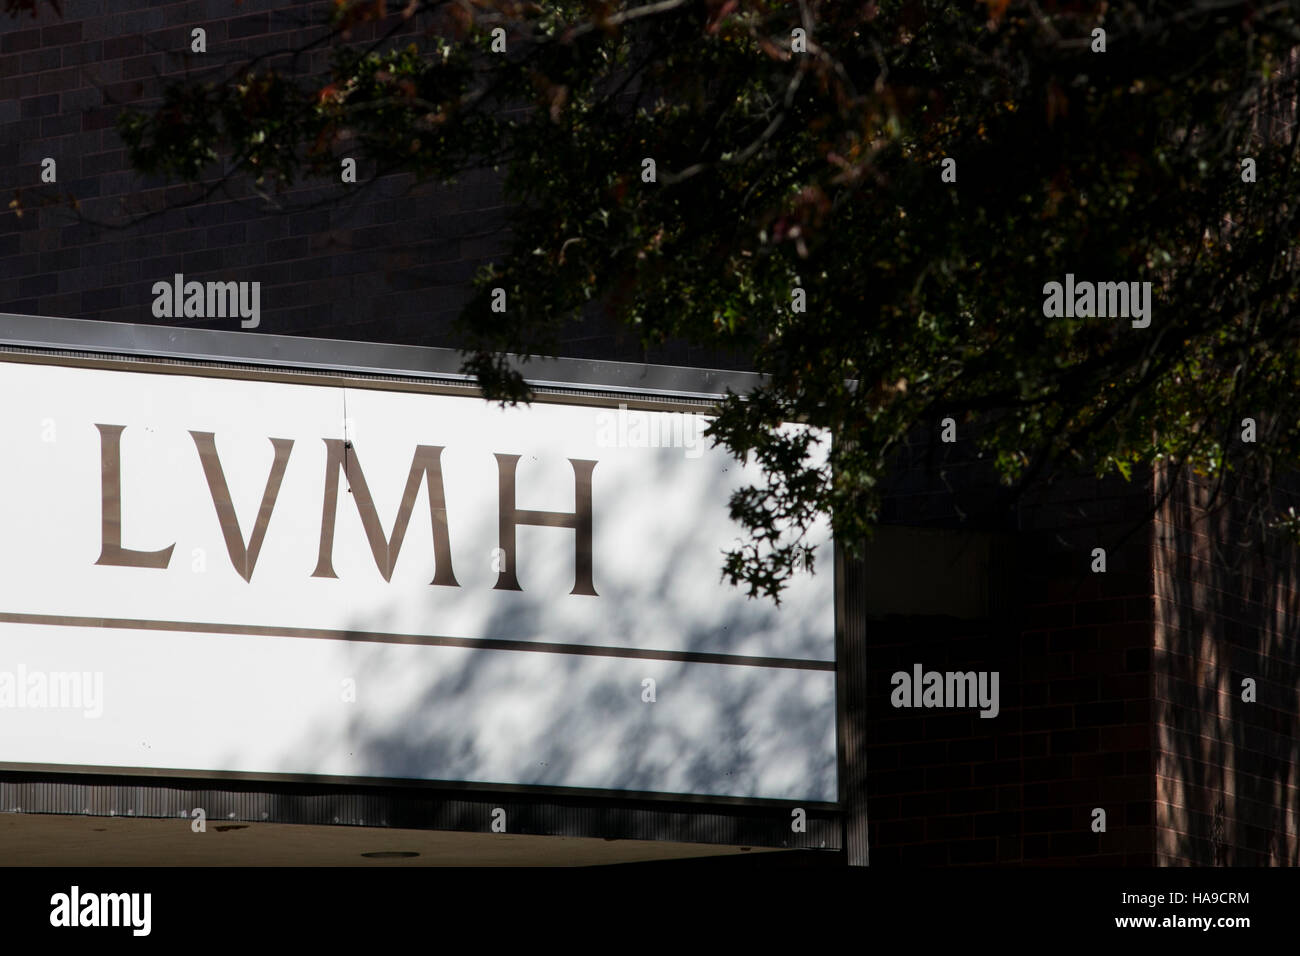 Lvmh Stock Photos & Lvmh Stock Images - Alamy